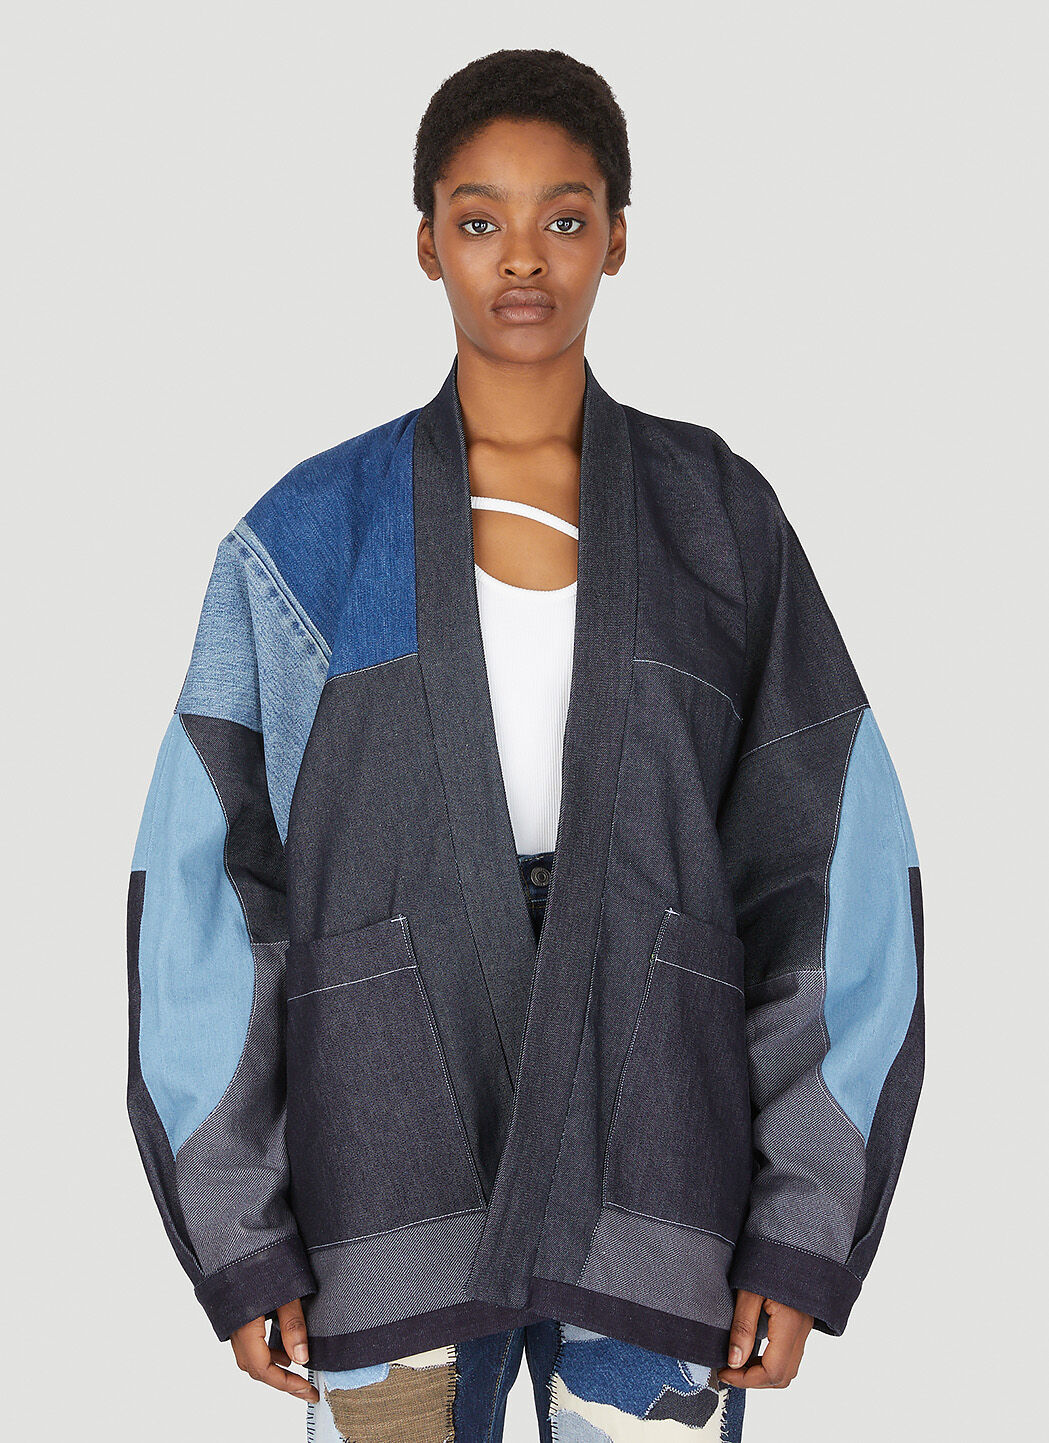 DRx FARMAxY FOR LN-CC Drop 6 Patchwork Kimono Jacket Black drx0347011